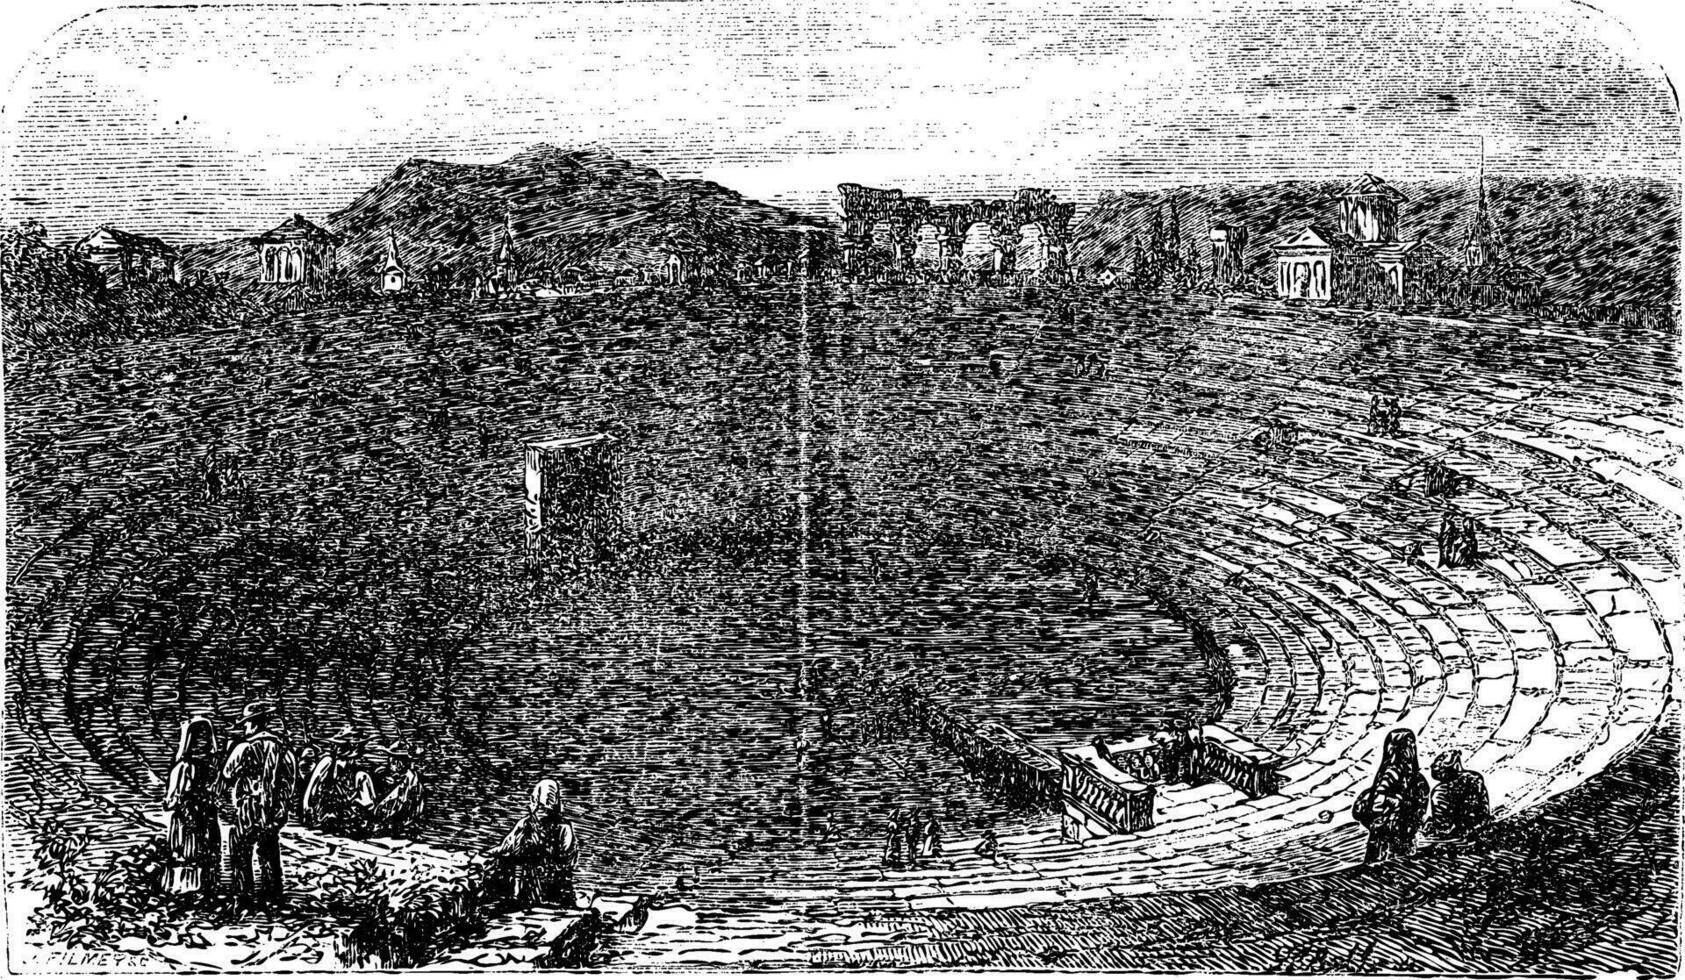 verona arena i 1890, i verona, Italien. årgång gravyr. vektor